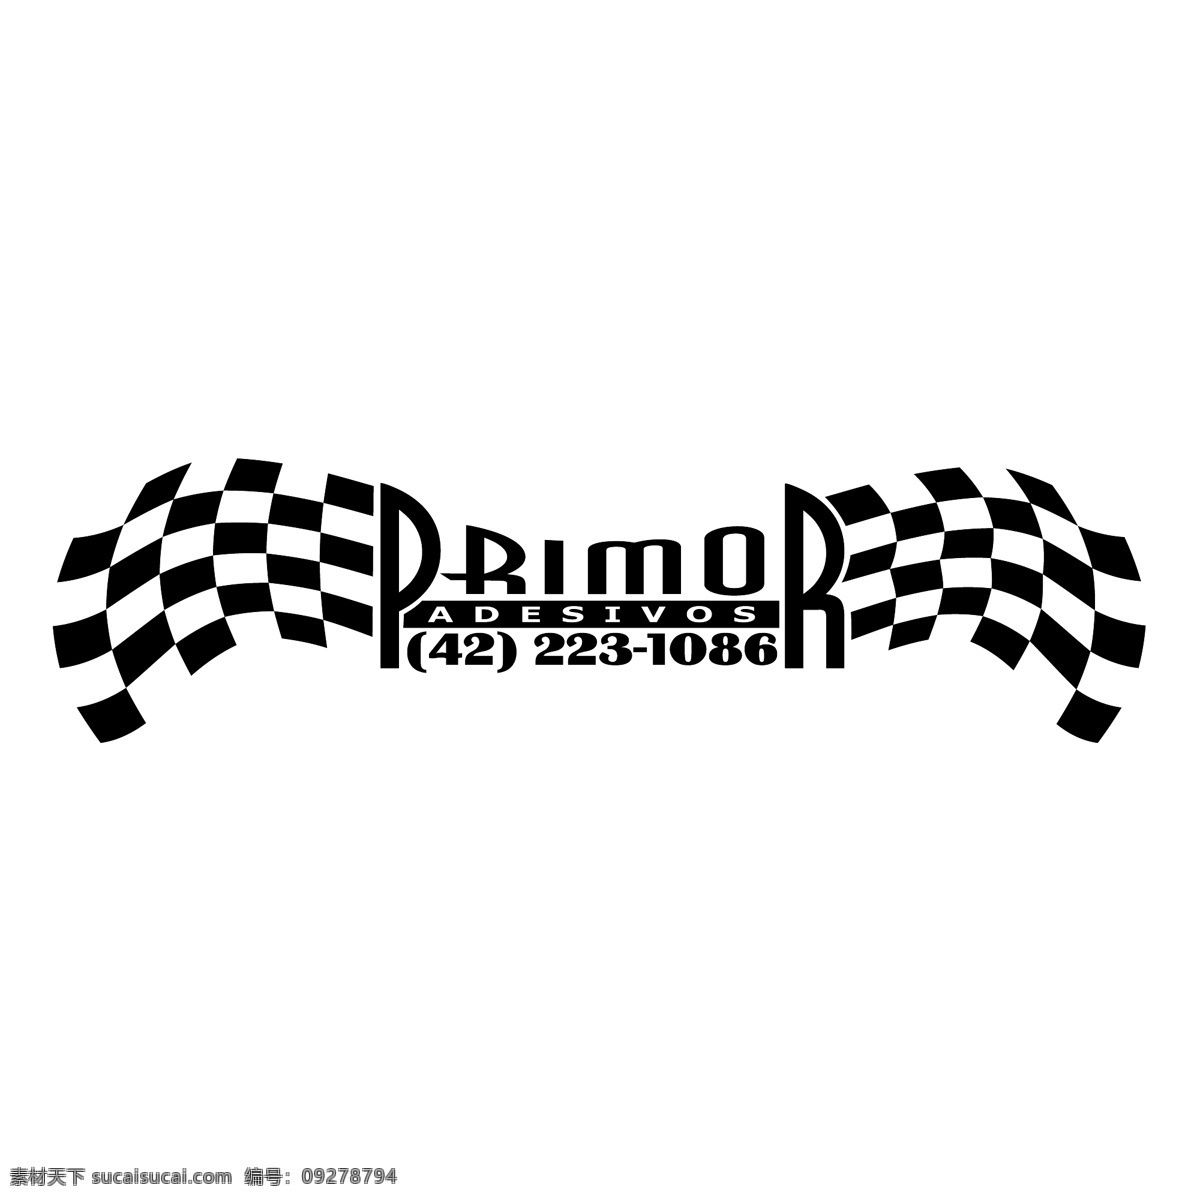 赛车 标识 免费 psd源文件 logo设计